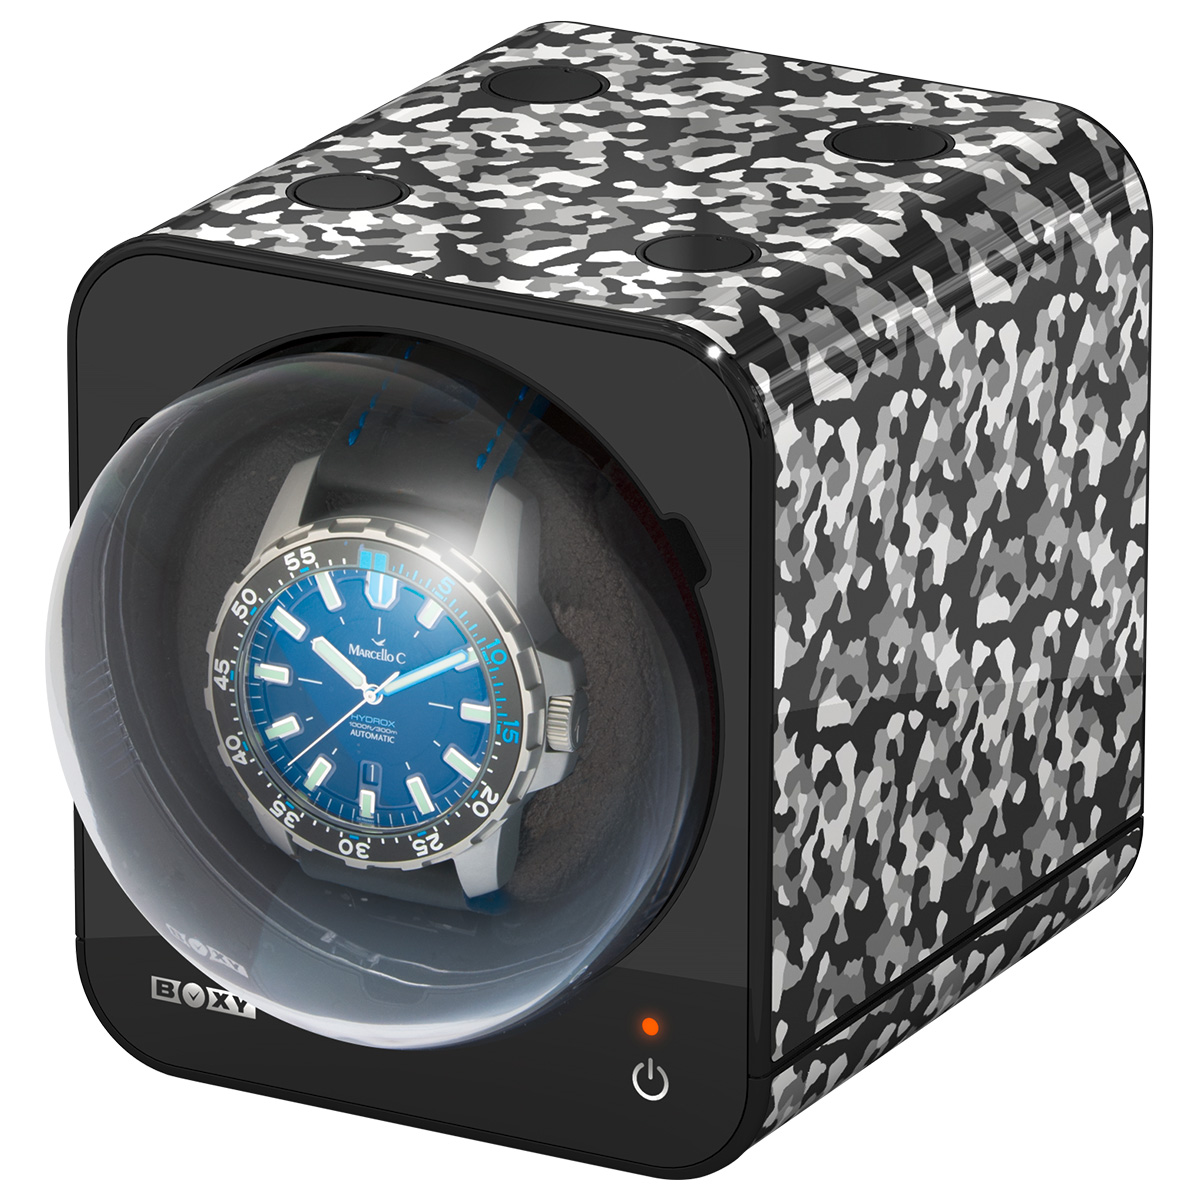 Remontoir Boxy Fancy Brick pour une montre, camouflage noir et blanc, combinable, sans adaptateur